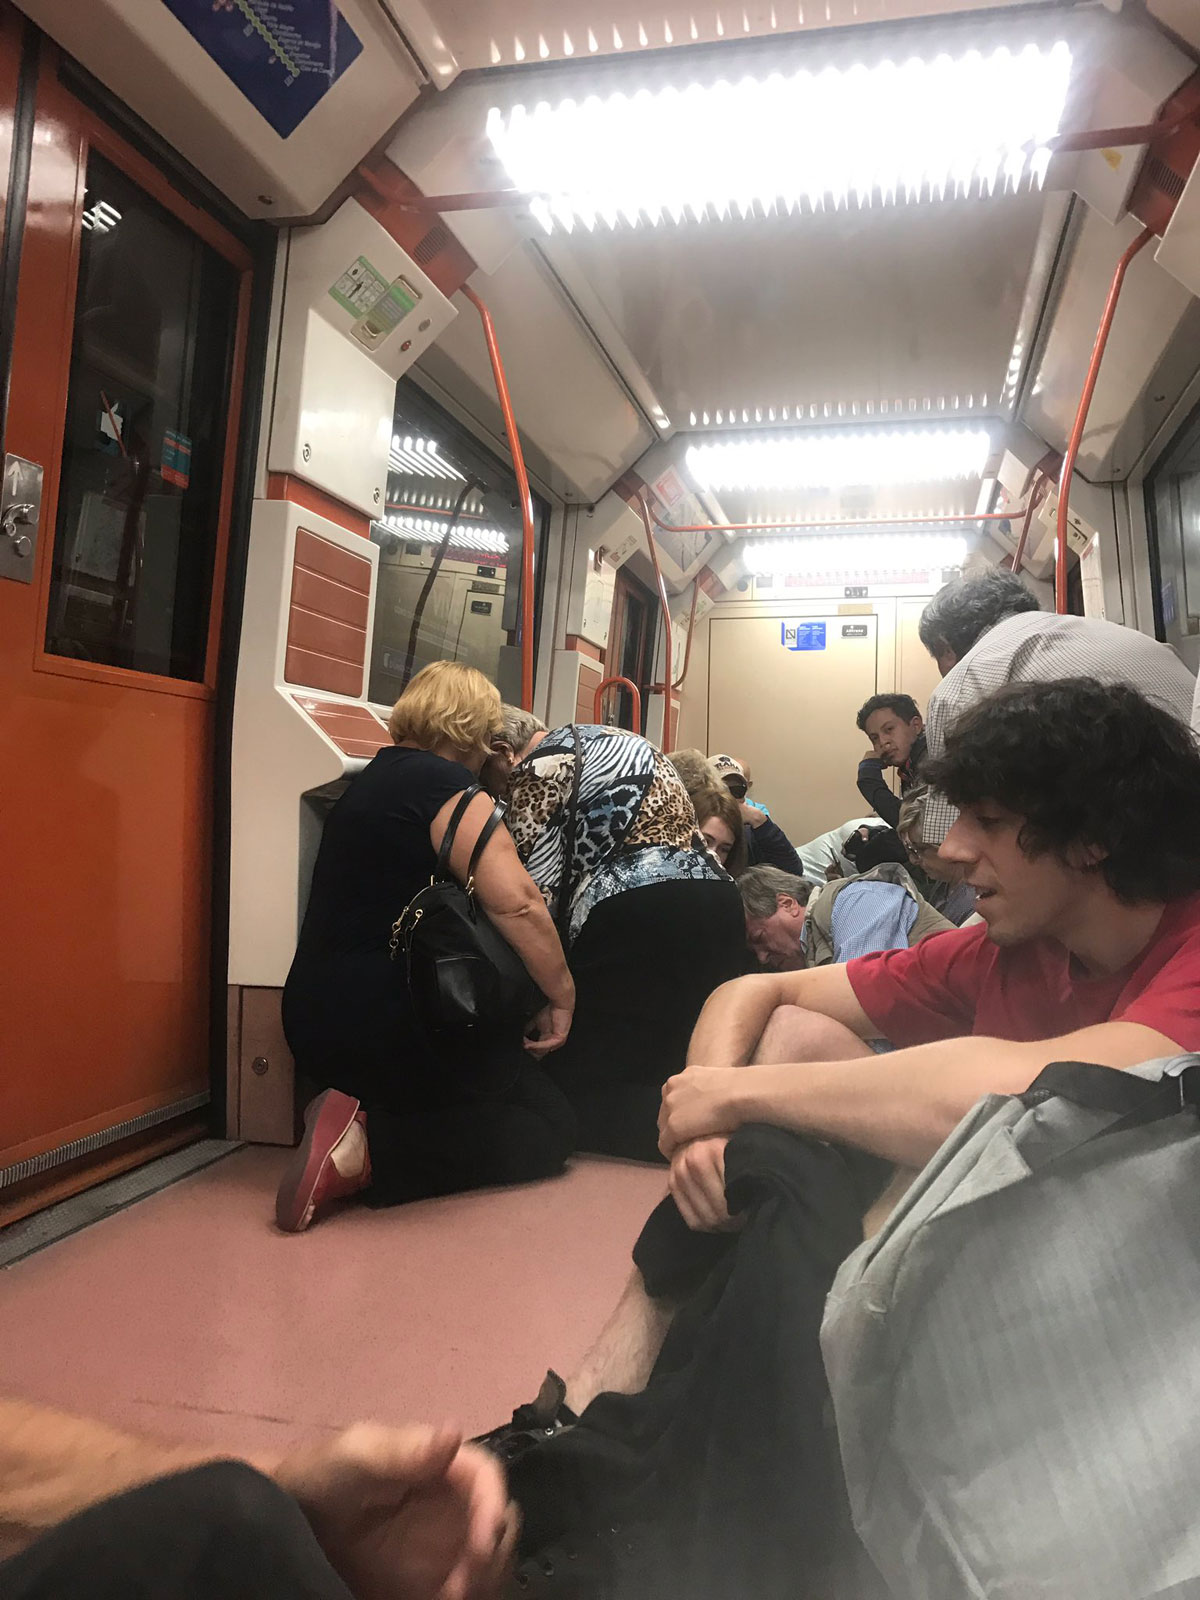 Incidente en el metro de Madrid - Twitter @davidfrivas